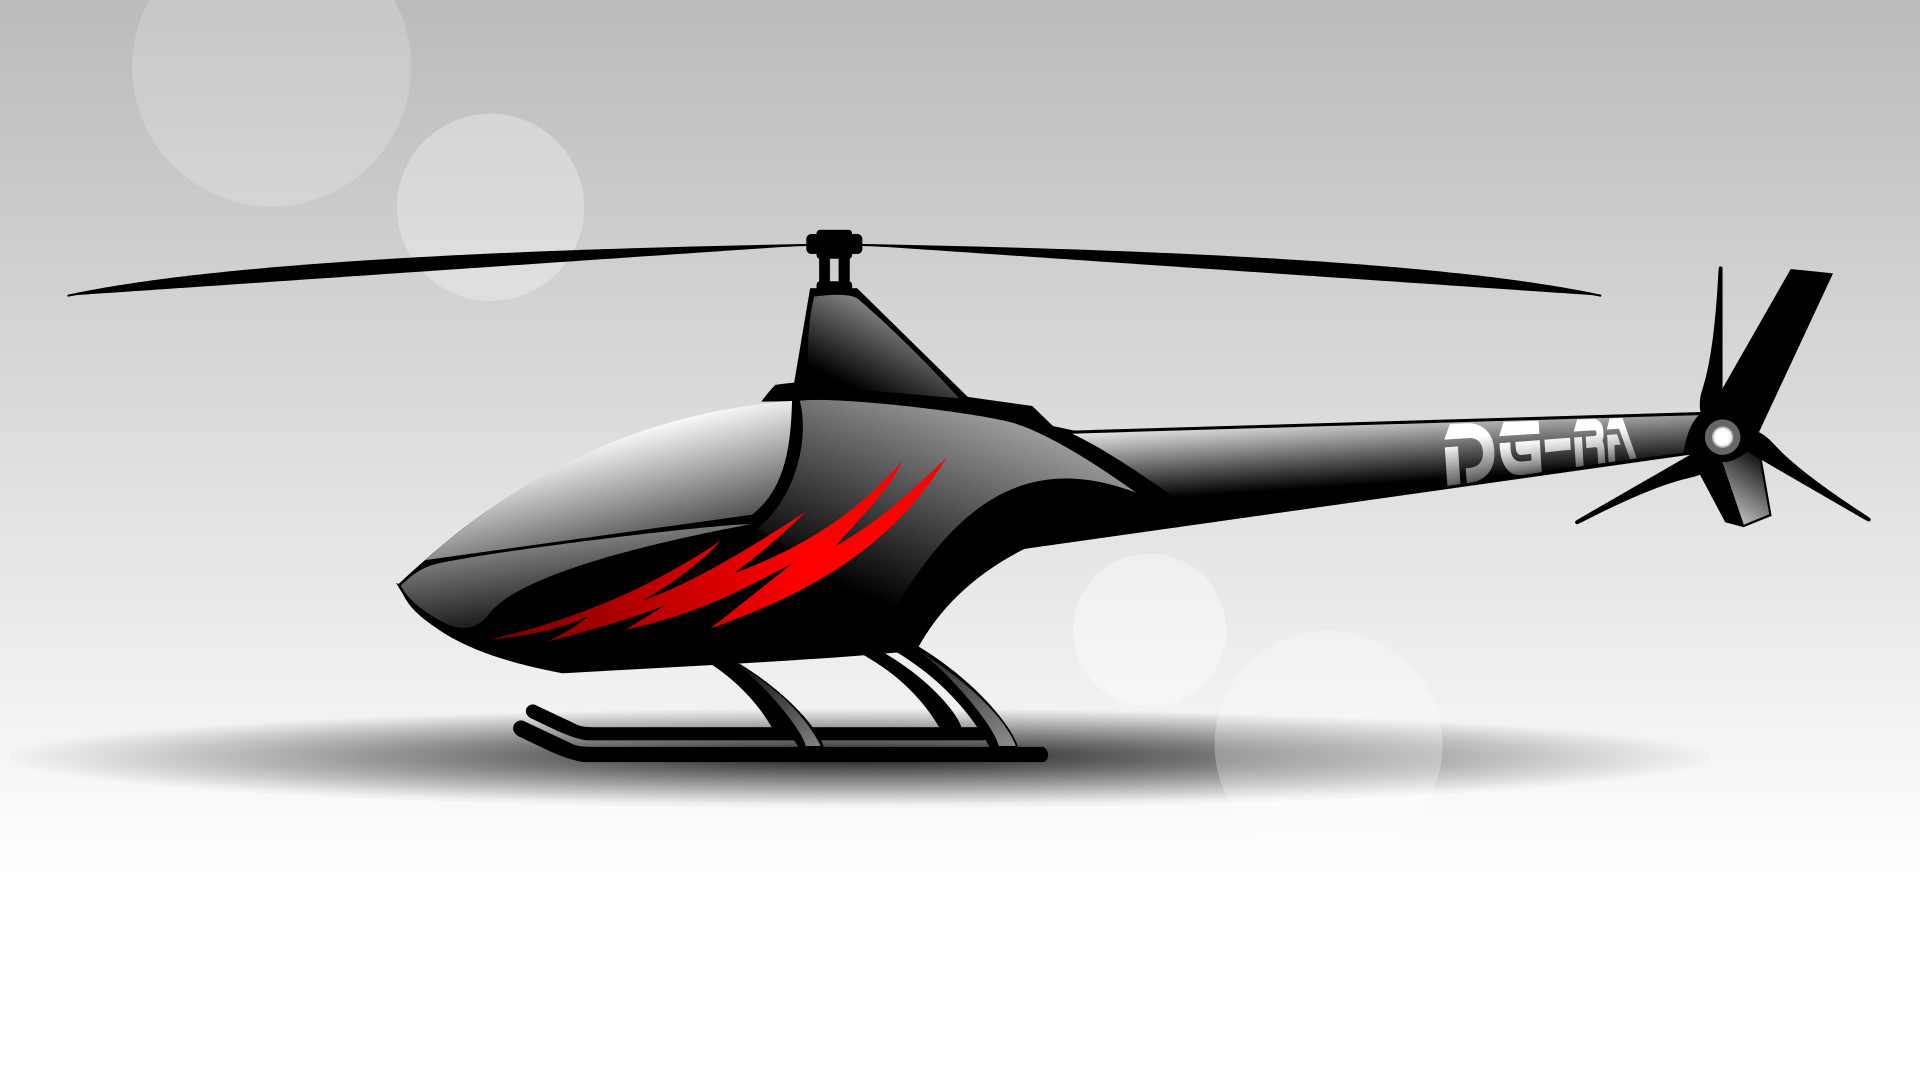 Wir sehen eine Zeichnung eines Ultraleicht-Hubschraubers. Er steht auf Kufen und ist ganz in schwarz gehalten. An seiner Flanke sind rote stilisierte Blitze zu sehen.